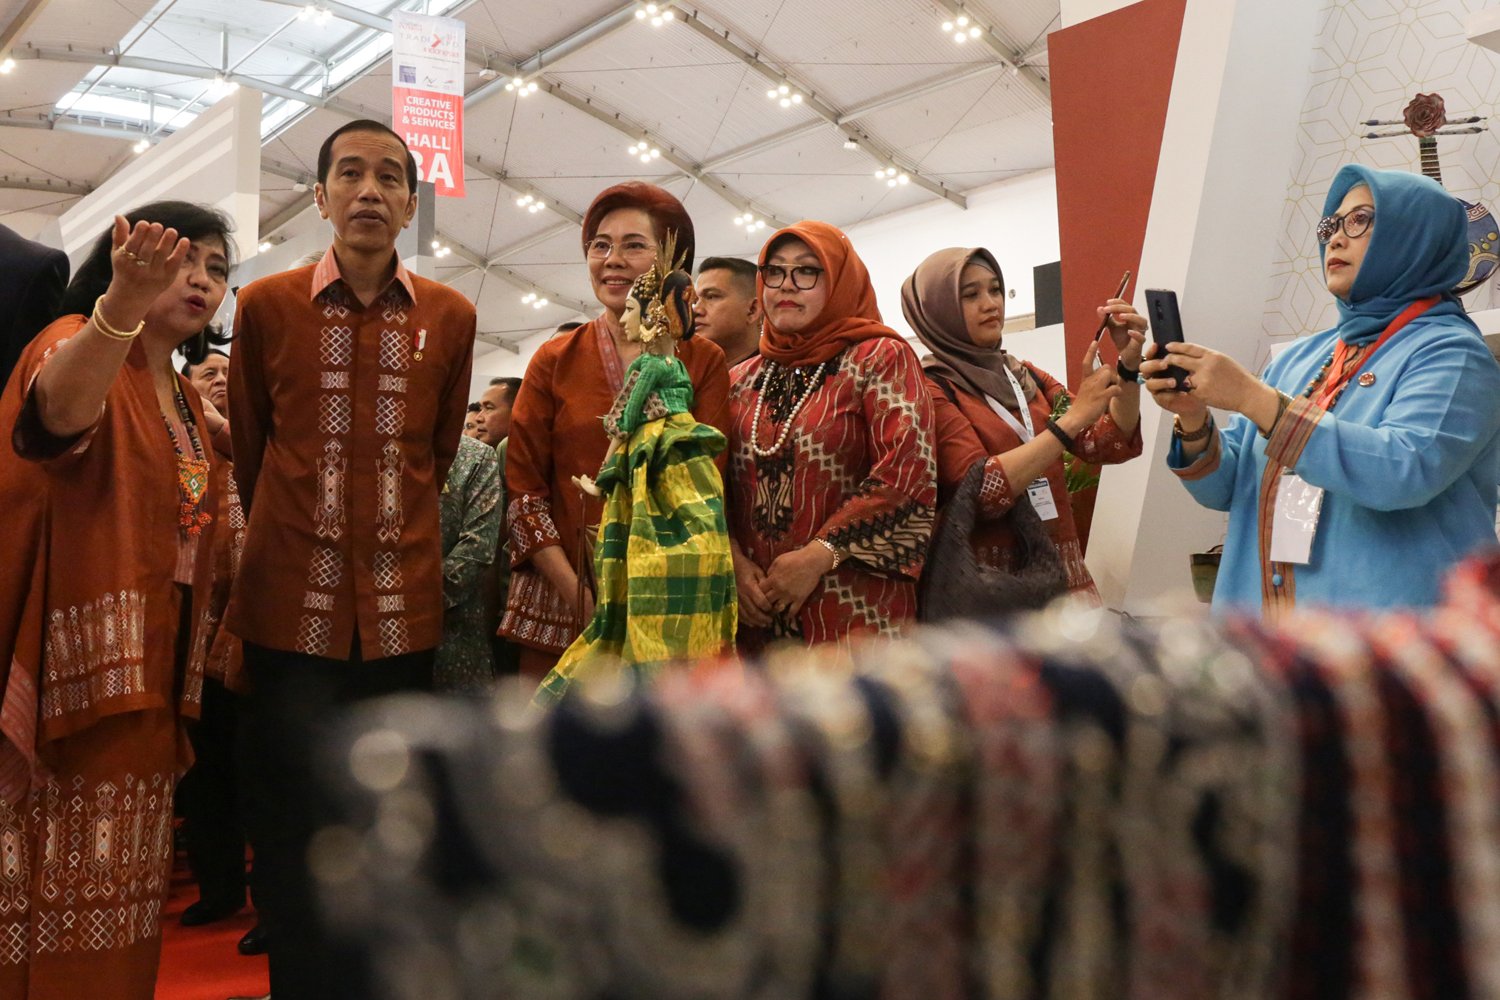 Presiden Joko Widodo mendatangi salah satu booth di acara Trade Expo, ICE BSD , Banten (24/10). TEI merupakan ajang promosi tahunan berskala internasional yang menampilkan produk dan jasa Indonesia berorientasi pasar ekspor.